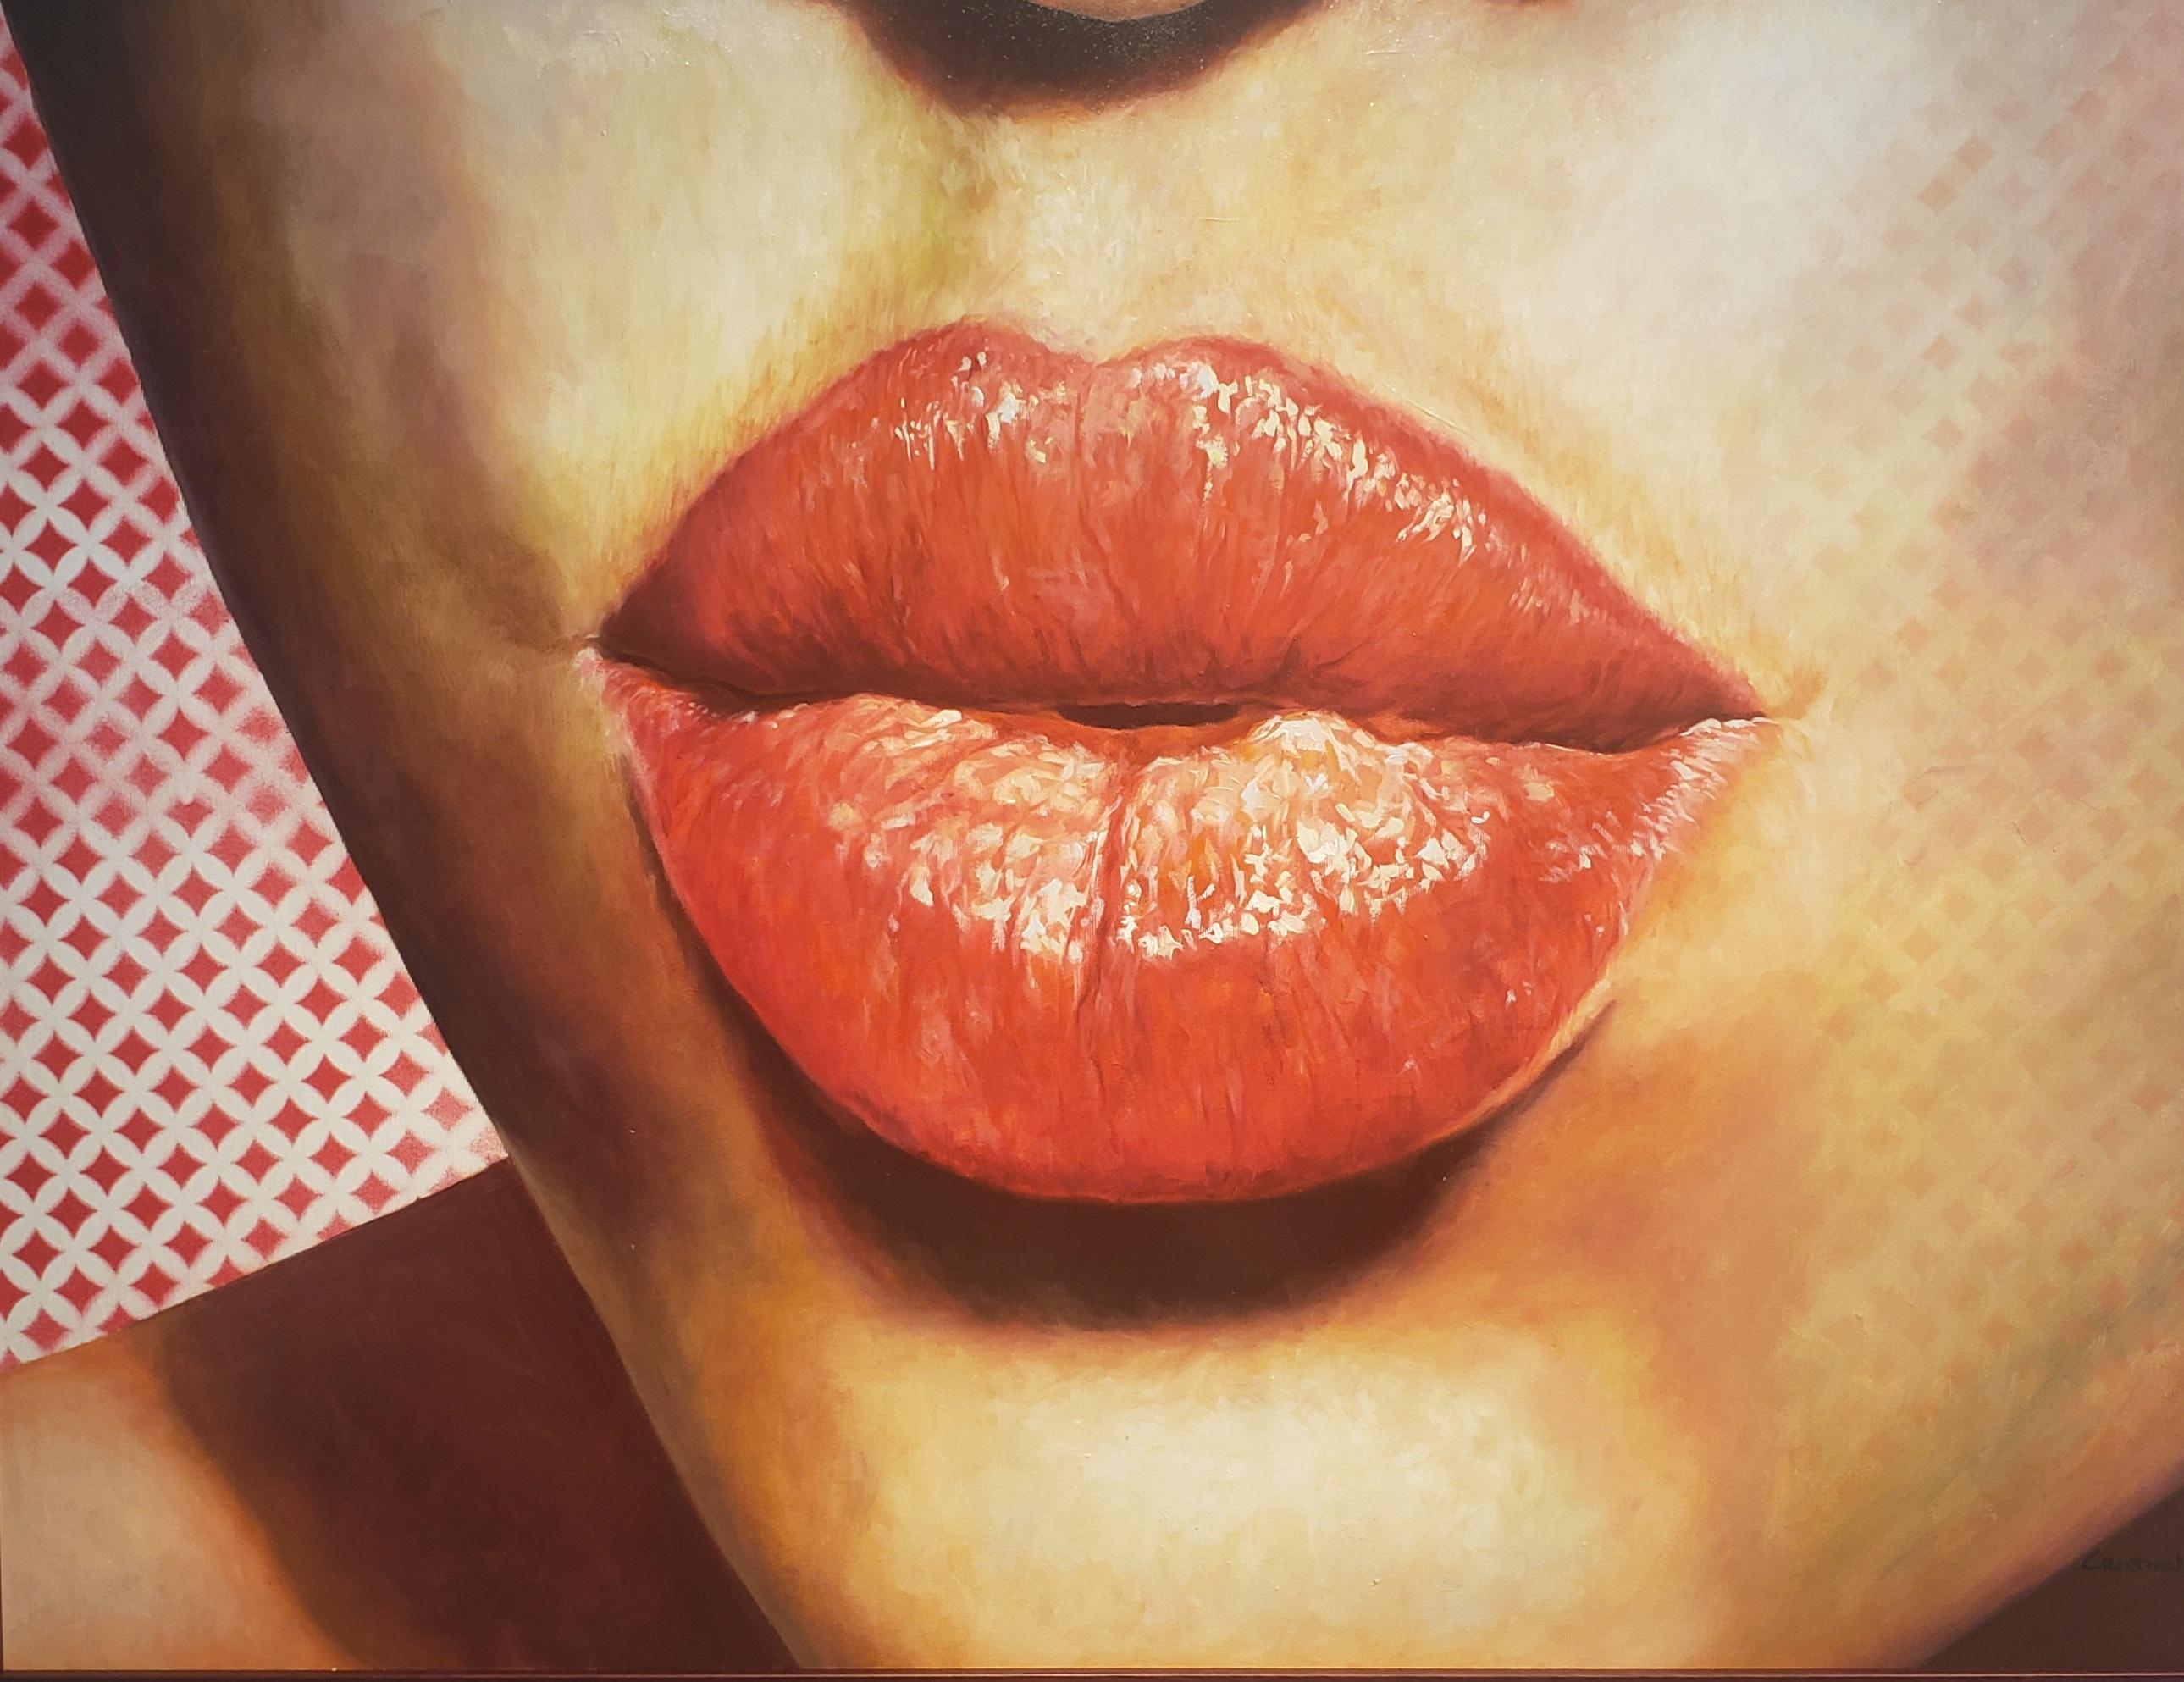 BESAME-KISS ME  ist ein neues Gemälde aus dem Studio des kubanischen Künstlers Cristian Mesa Velazquez. Küss mich ist  ein Ölgemälde im realistischen Stil der zeitgenössischen Malerei, das in Öl auf Leinwand gemalt ist.  Cristian Mesa Velazquez ist